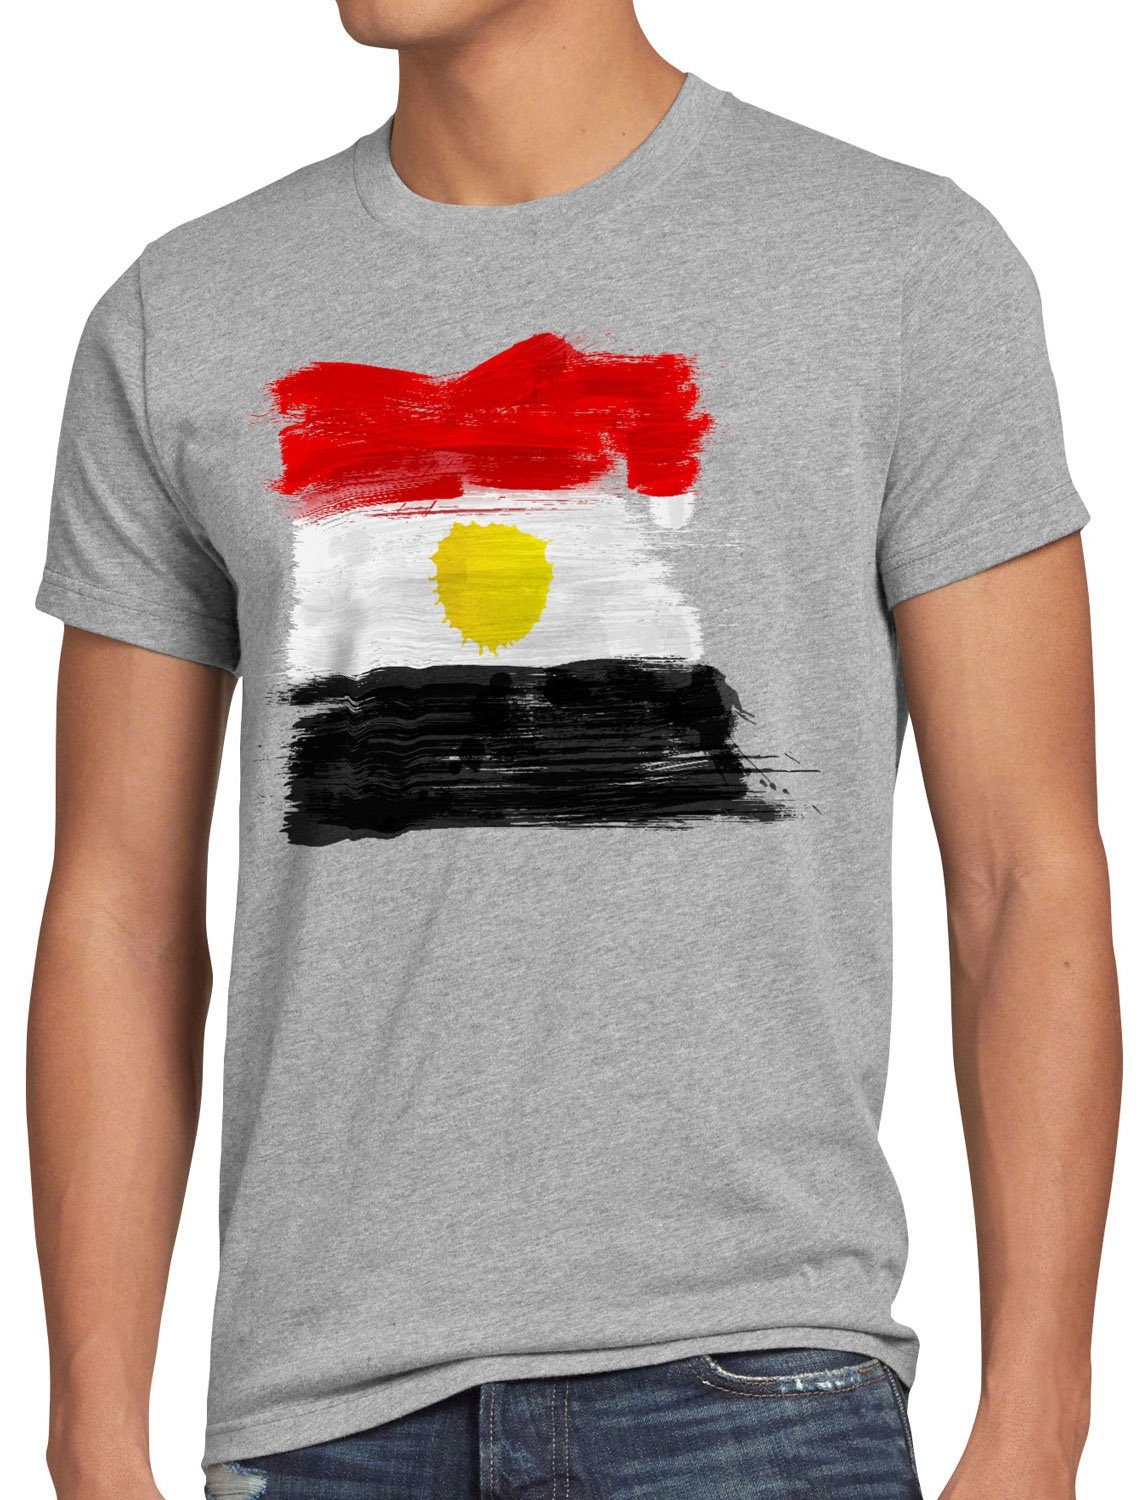 style3 Print-Shirt Herren T-Shirt Flagge Ägypten Fußball Sport Egypt WM EM Fahne grau meliert